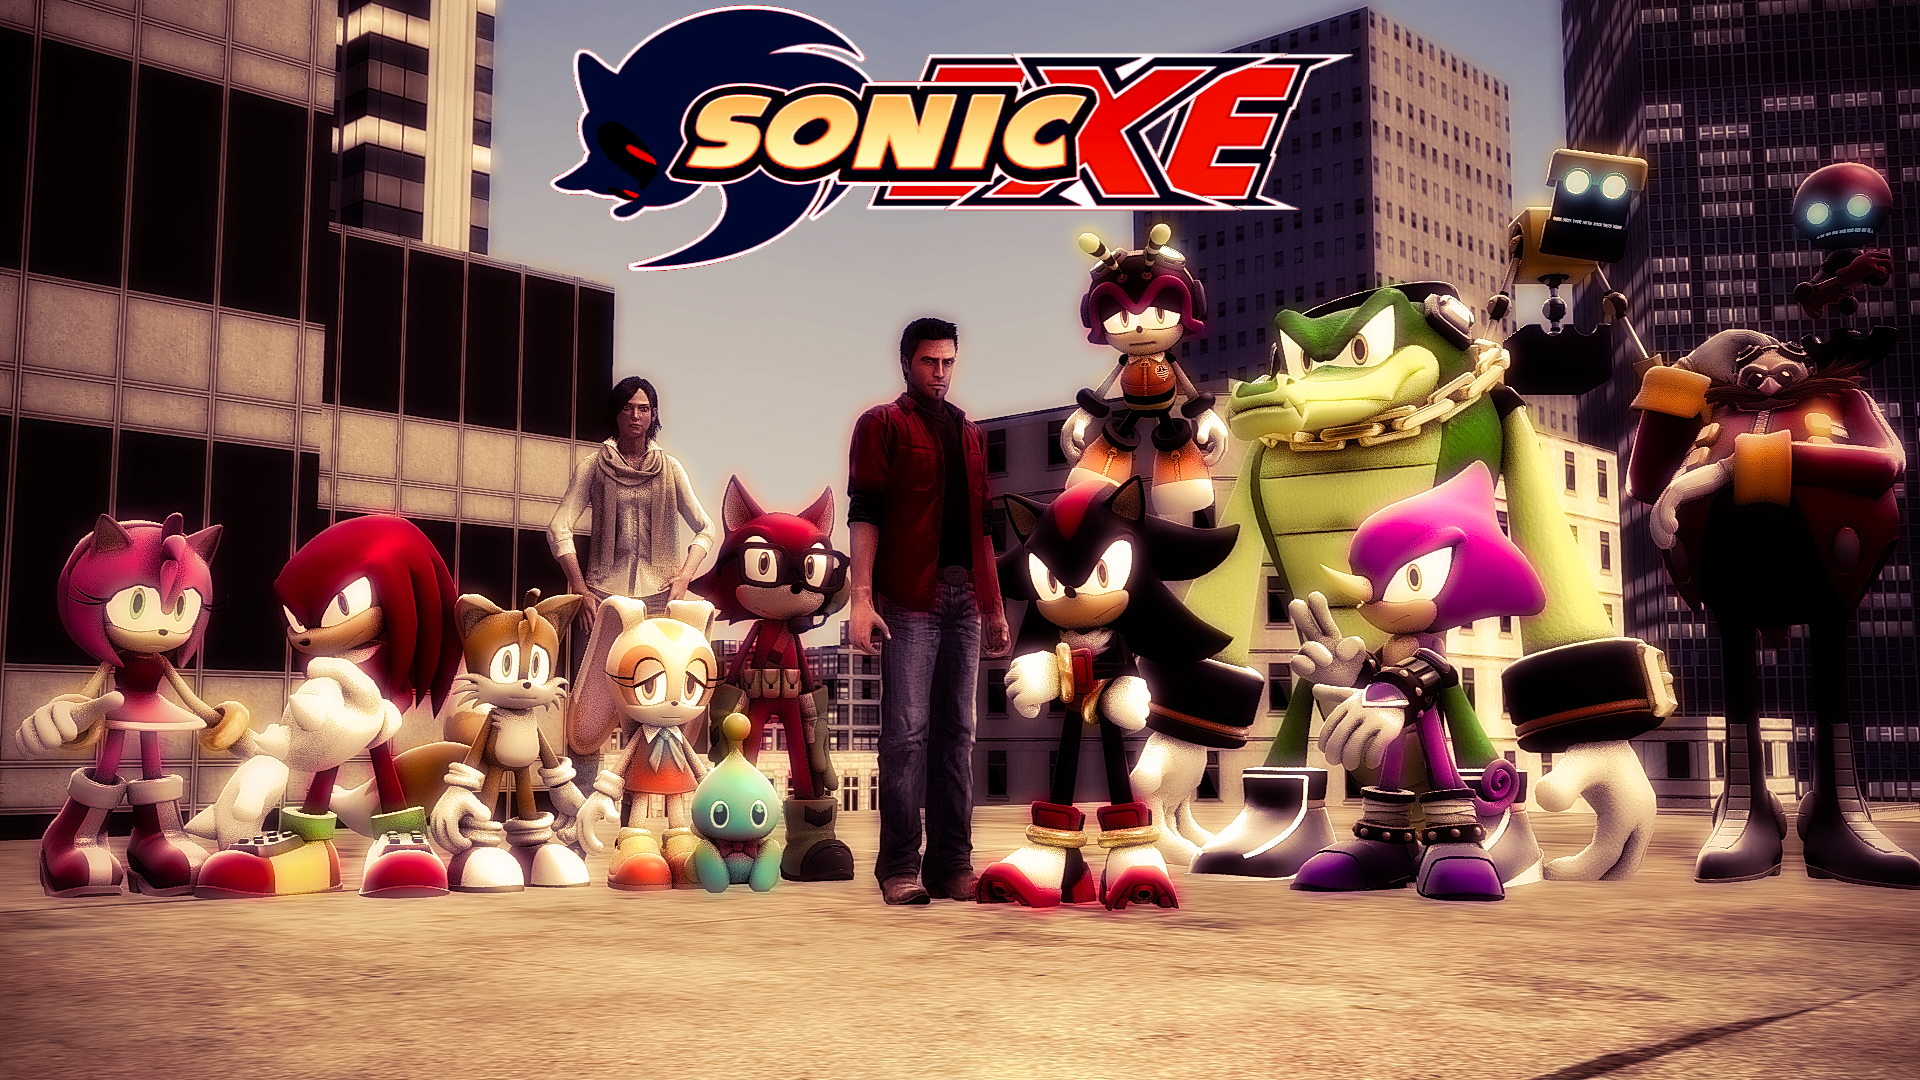 SFM SERIES] Sonic.exe: Season 2 by SONIC5658 on DeviantArt